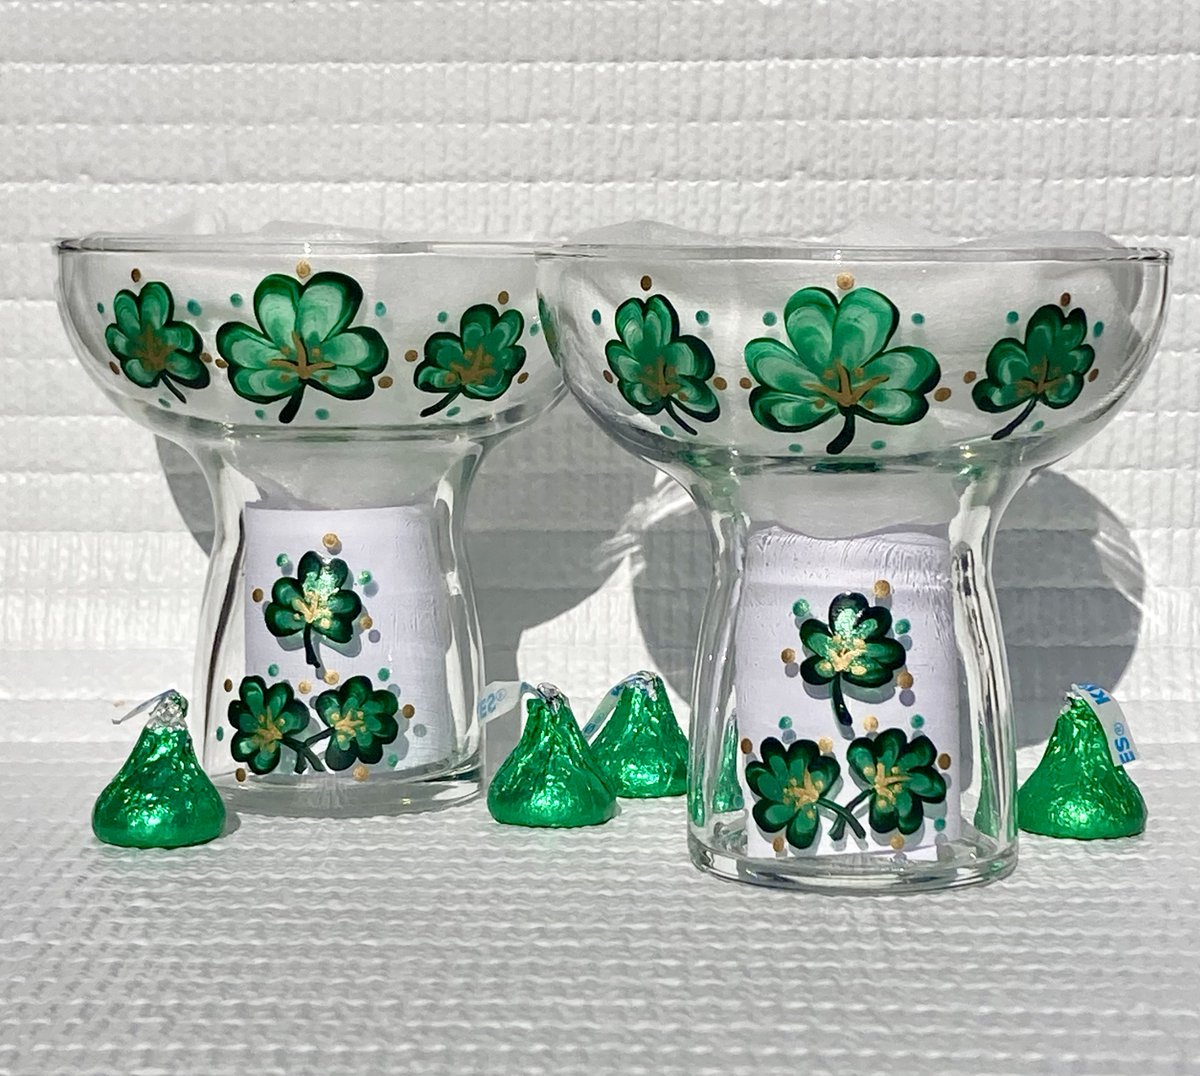 Check out these shamrocks etsy.com/listing/165360… #shamrocks #cocktailglasses #giftsorher #SMILEtt23 #CraftBizParty #irishgifts #etsy